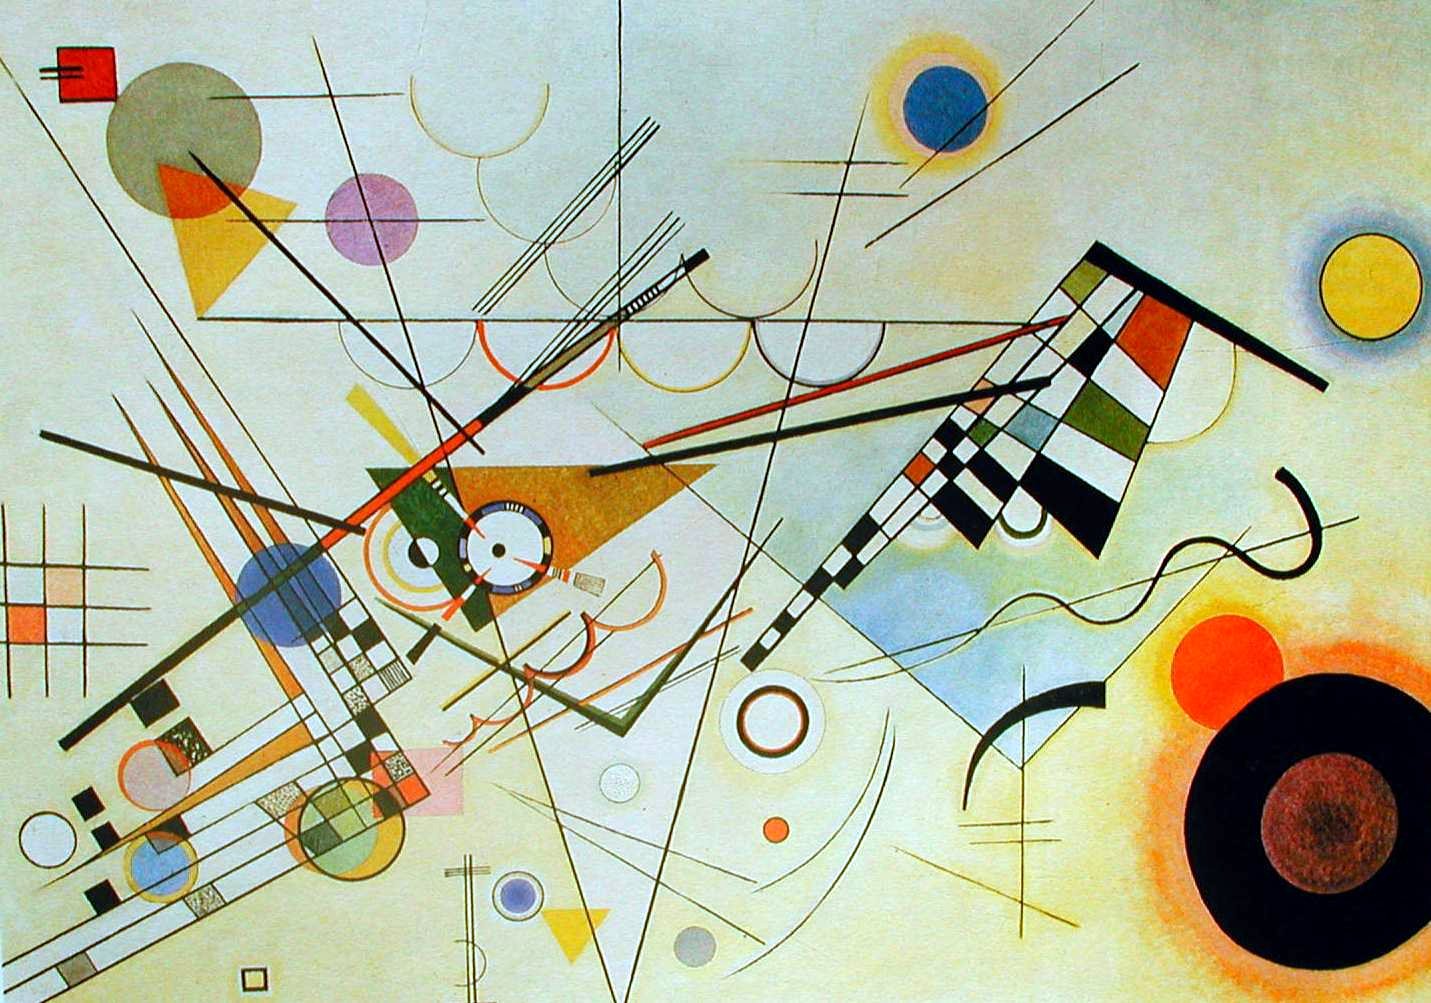 Il quadro ad olio di Wasily Kandinsky sono disposte, in maniera apparentemente casuale, forme geometriche elementari (cerchi, triangoli, quadrati, linee),  Sono riconoscibili trapezi, cunei e linee curve. 